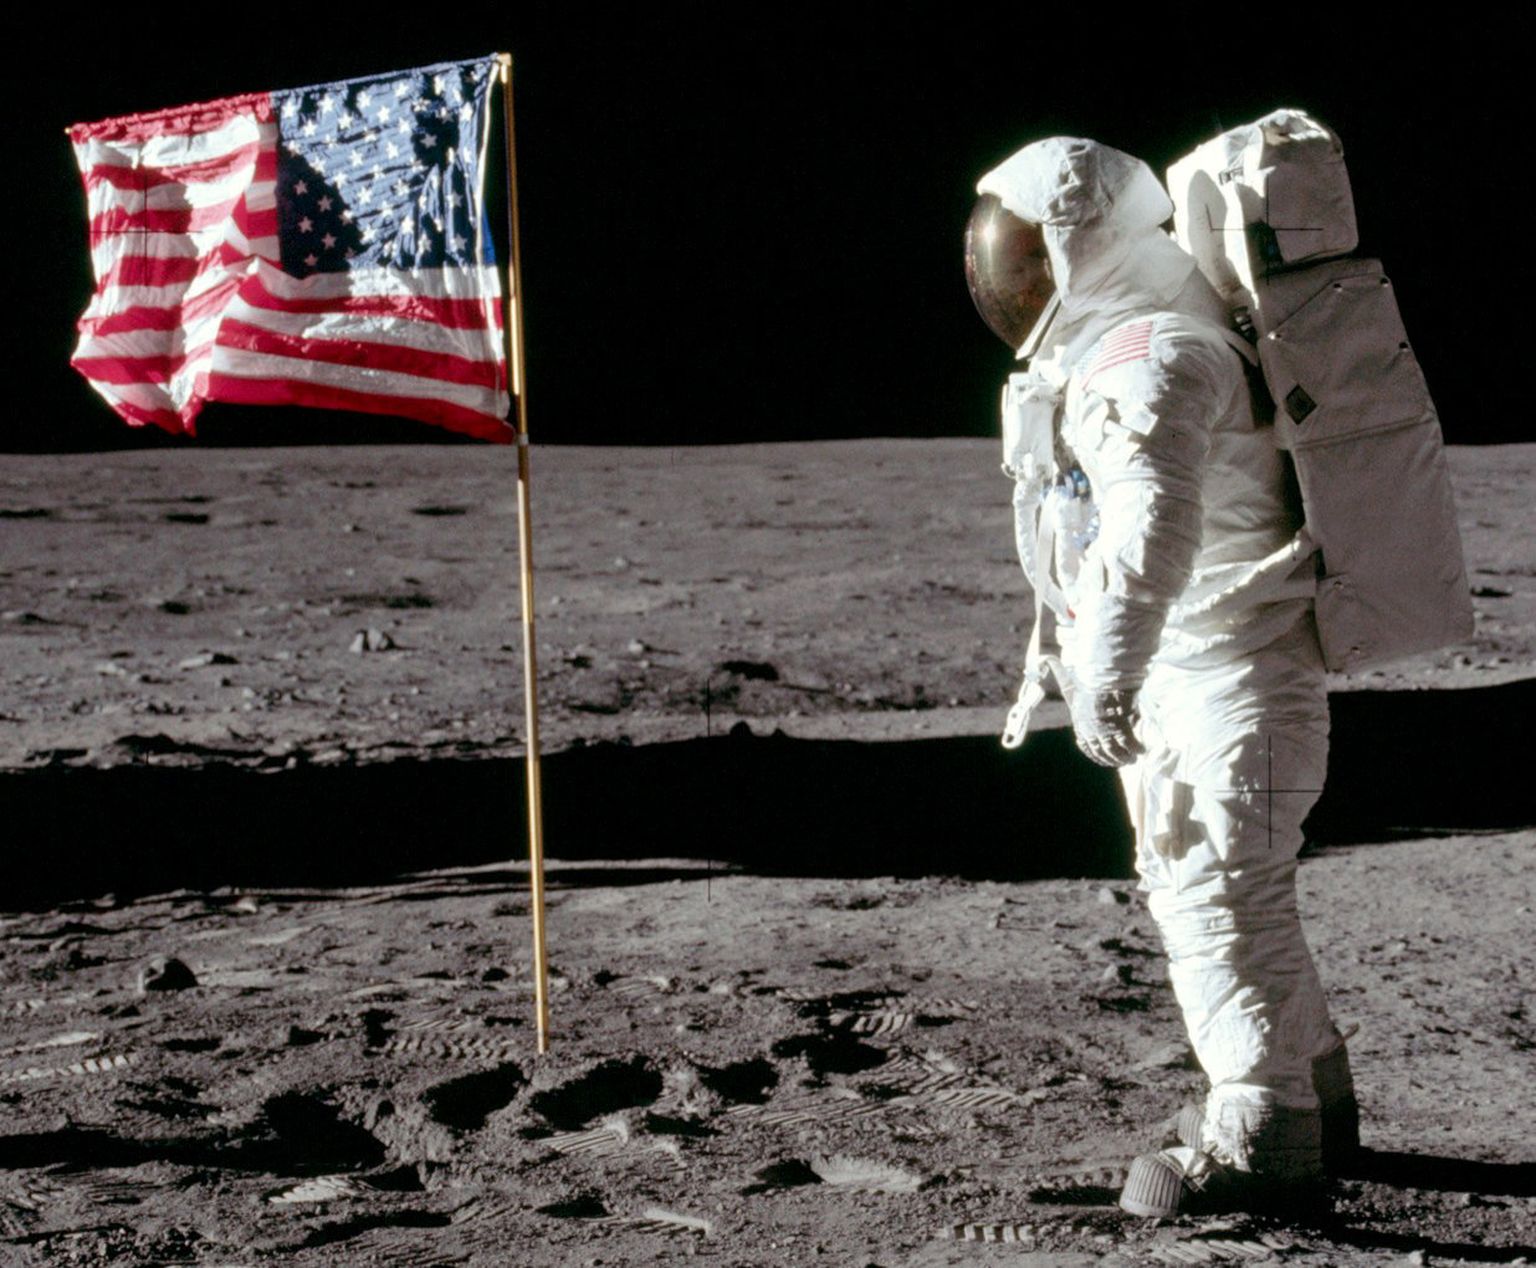 Американский астронавт Базз Олдрин после установки флага США на Луне смотрит на коллегу, первого человека на земле Нила Армстронга, который сделал это историческое фото. Луна, июль 1969 года.